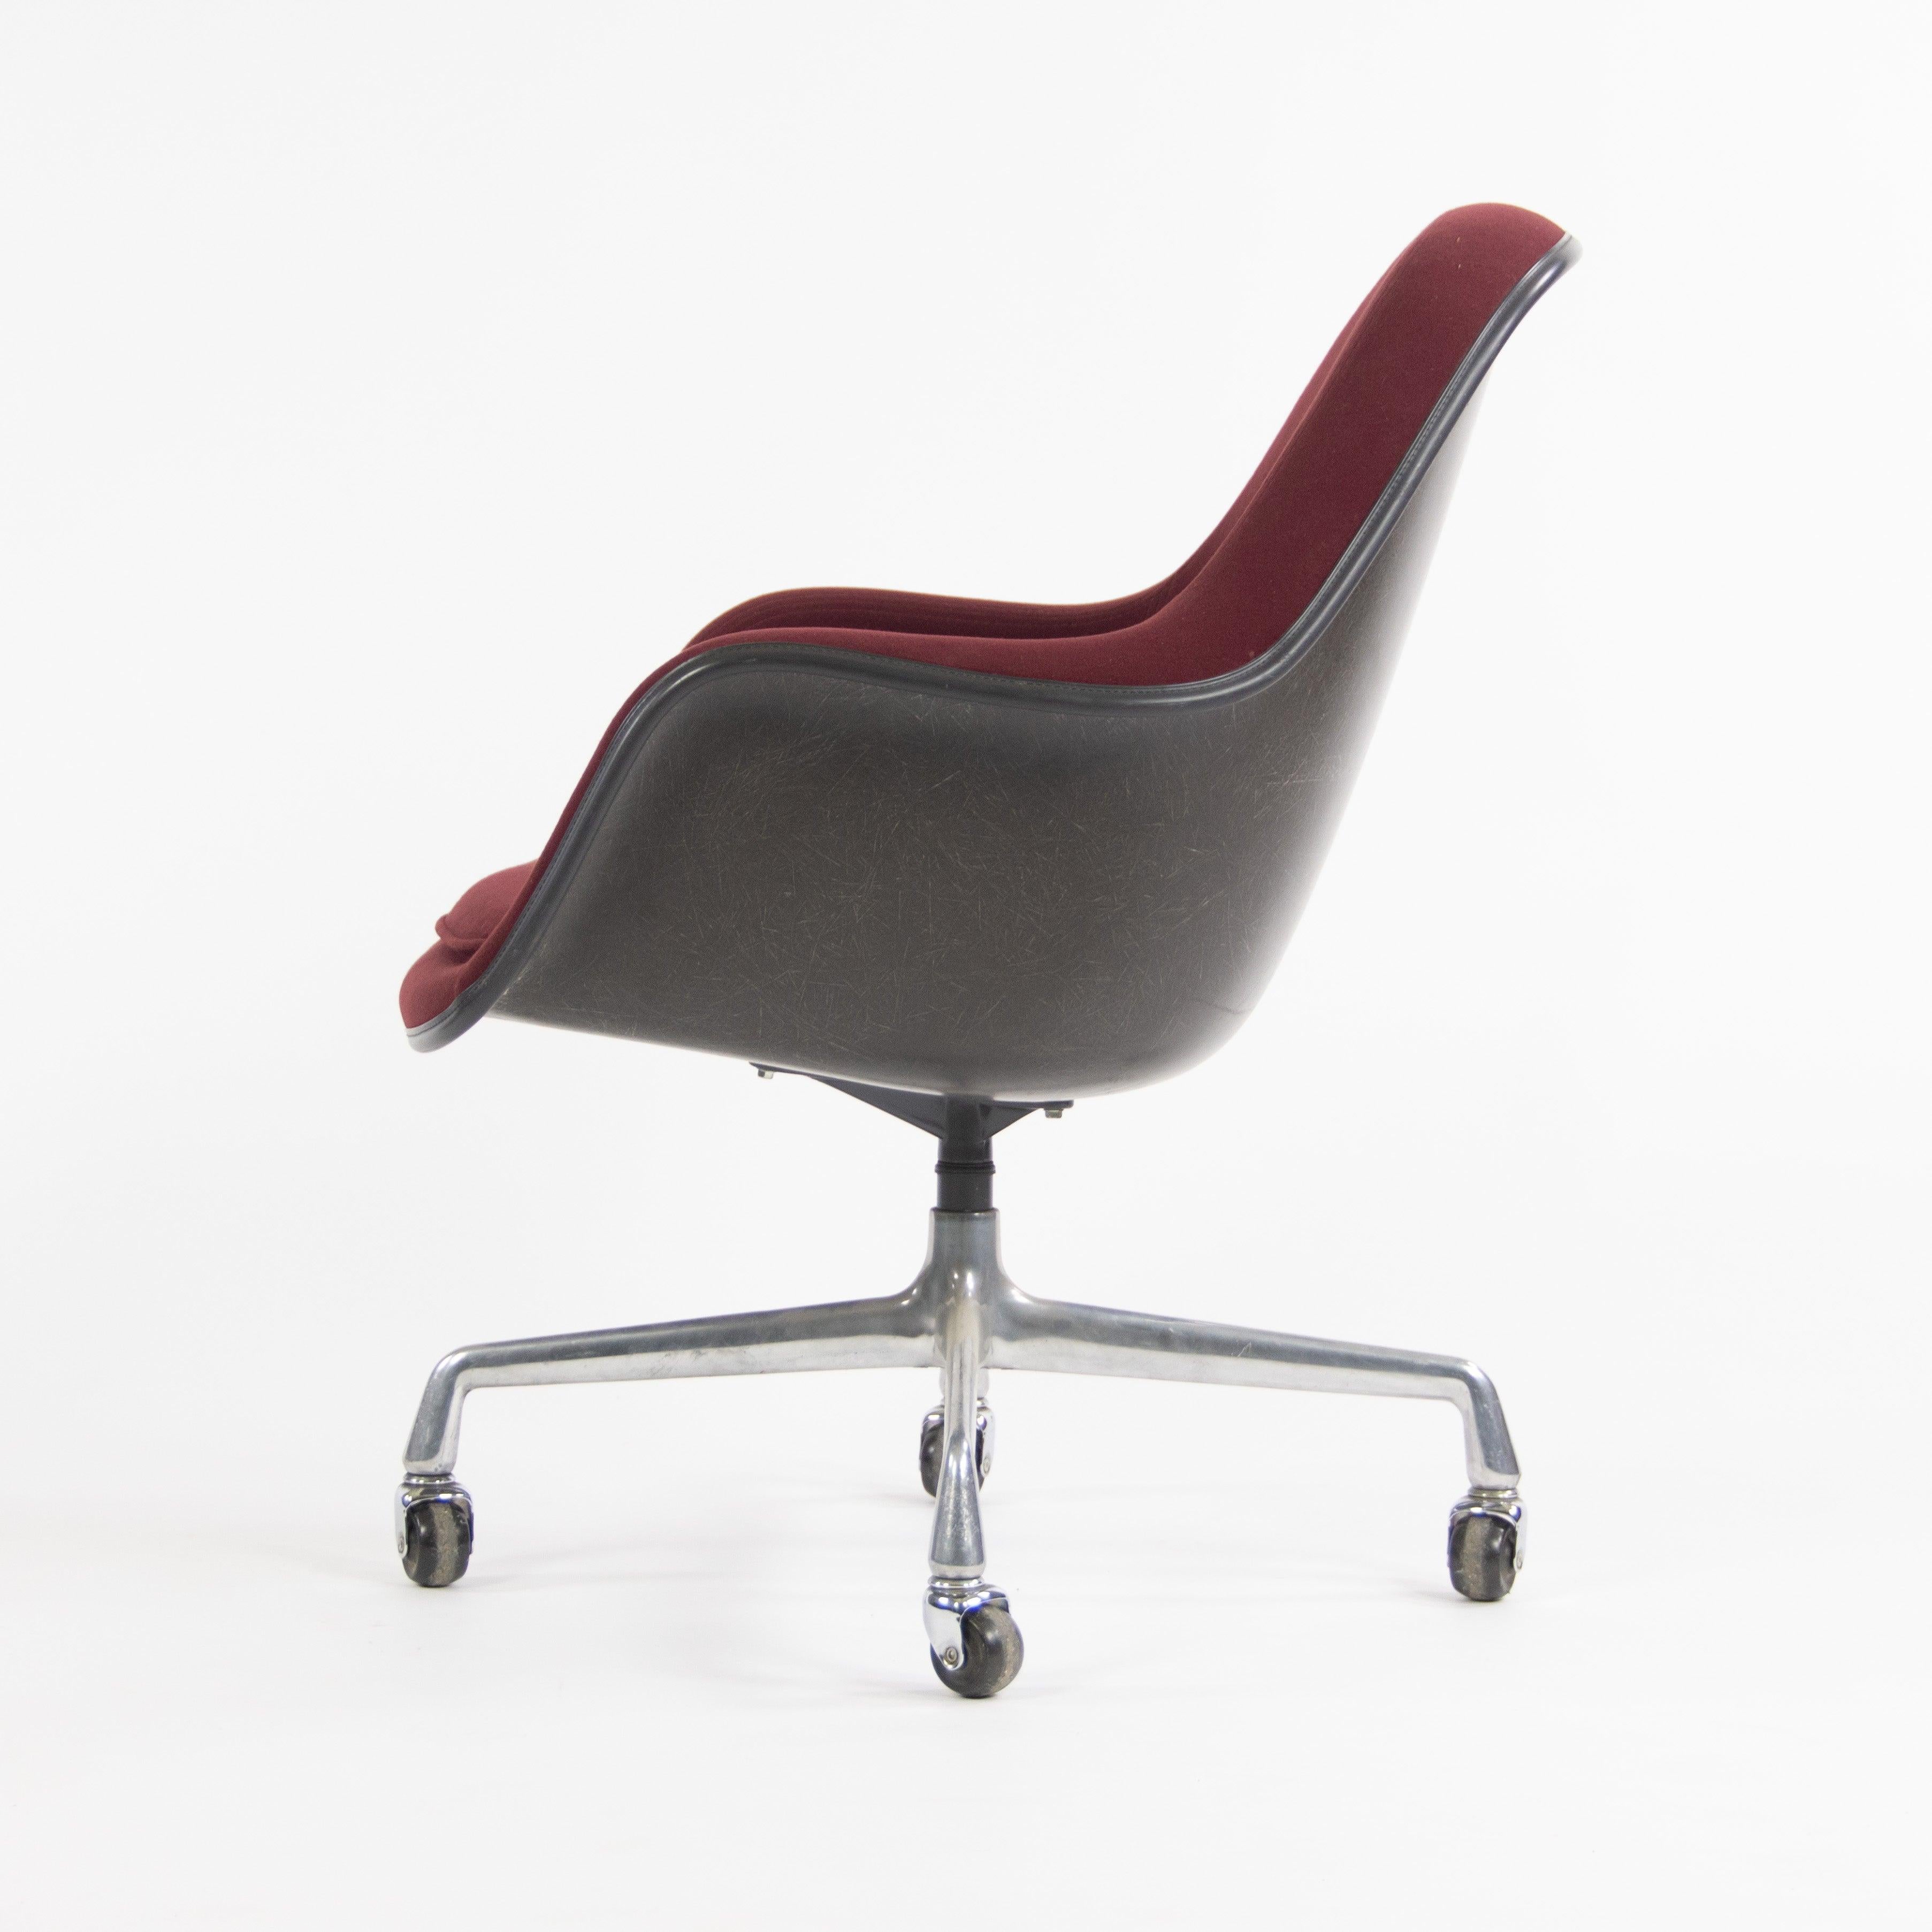 La vente porte sur une très rare et merveilleuse chaise EC175-8, conçue par Charles et Ray Eames, produite par Herman Miller. Il s'agit de l'une des conceptions les plus uniques et les plus tardives des Eames, qui s'appuie sur les innovations des